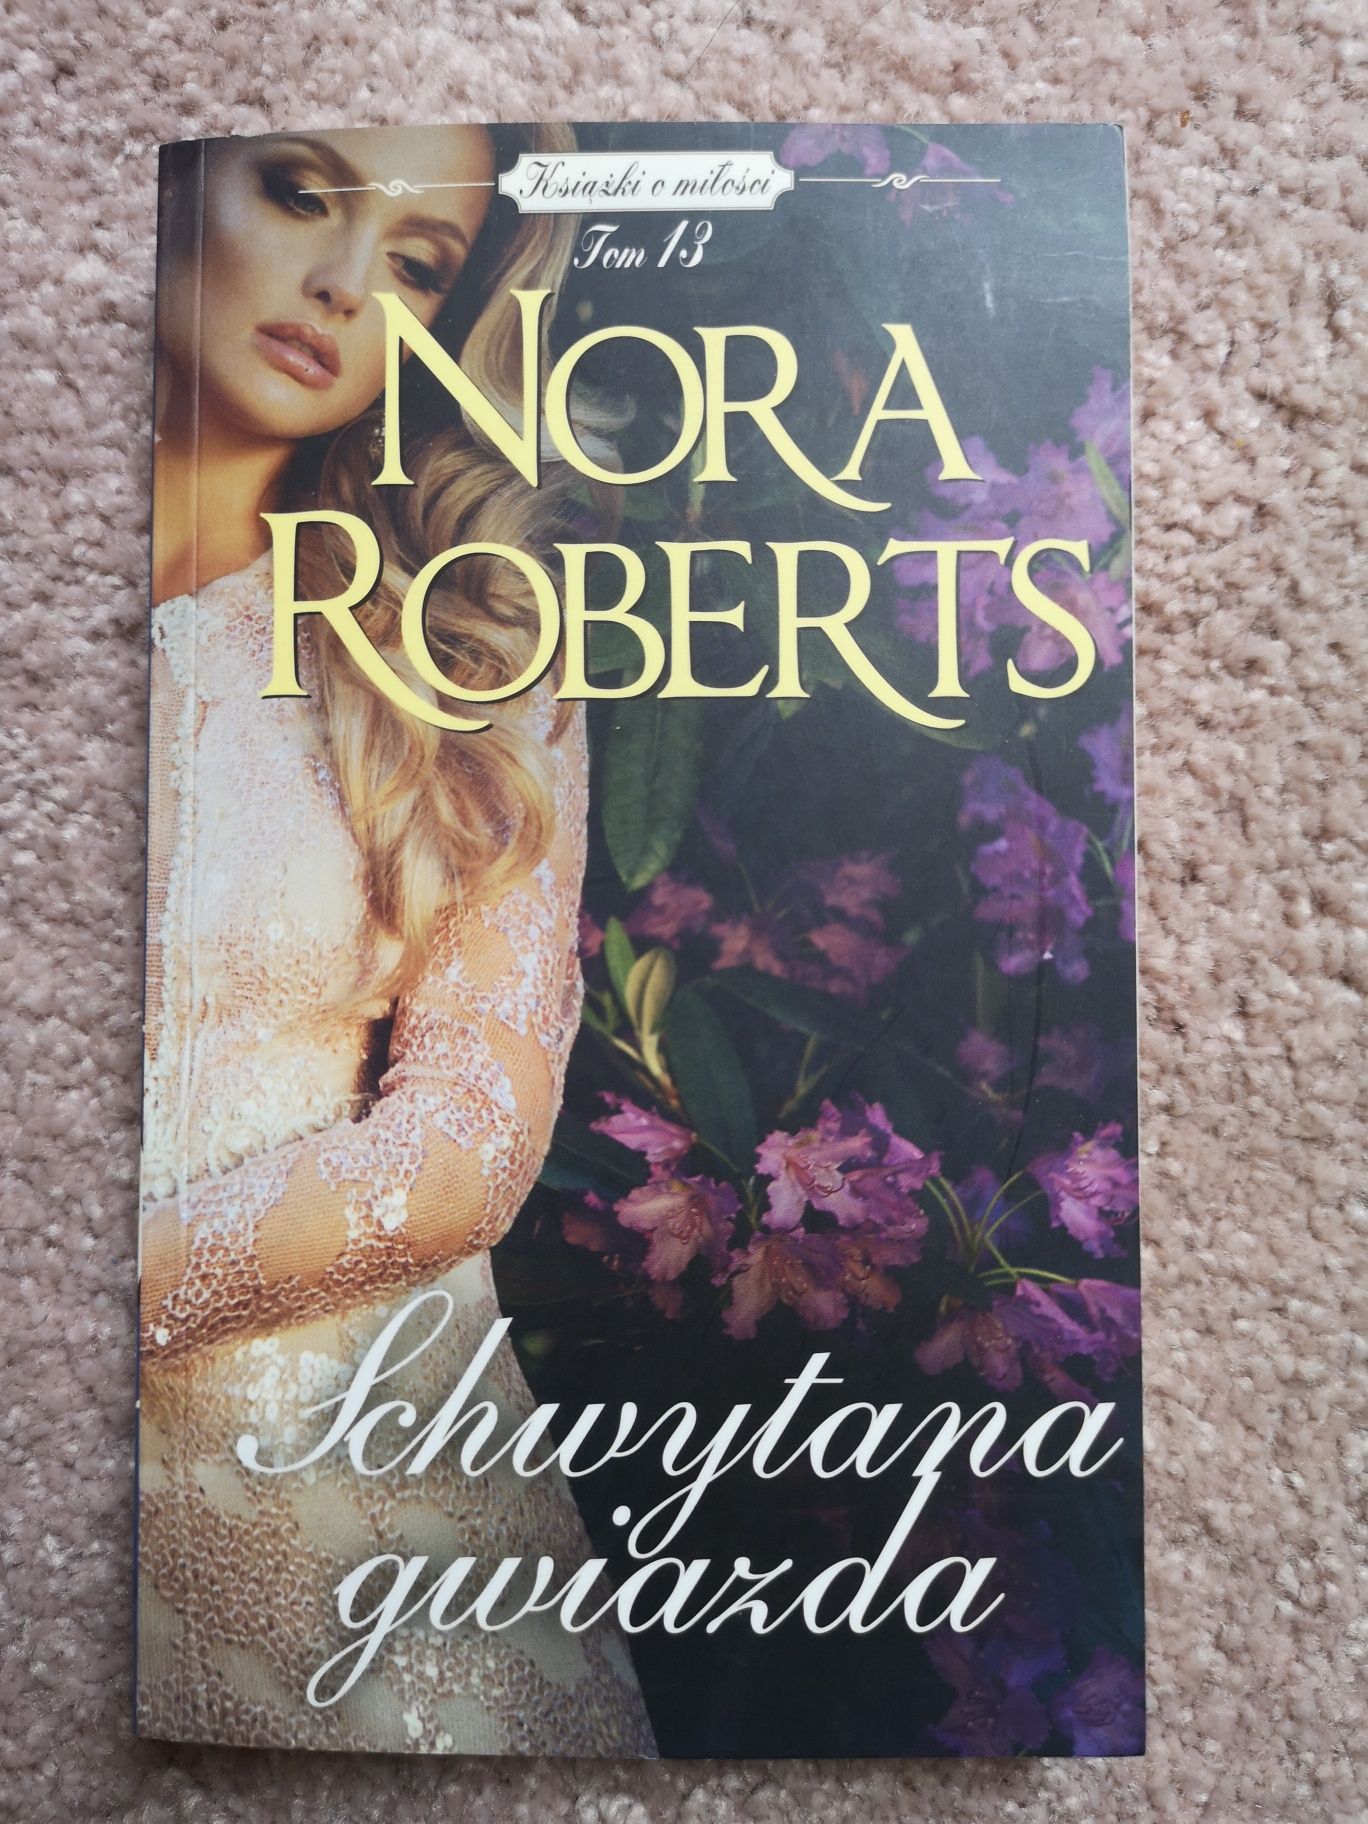 Nora Roberts, Schwytana gwiazda. Tom 13, książka o miłości. Nowa